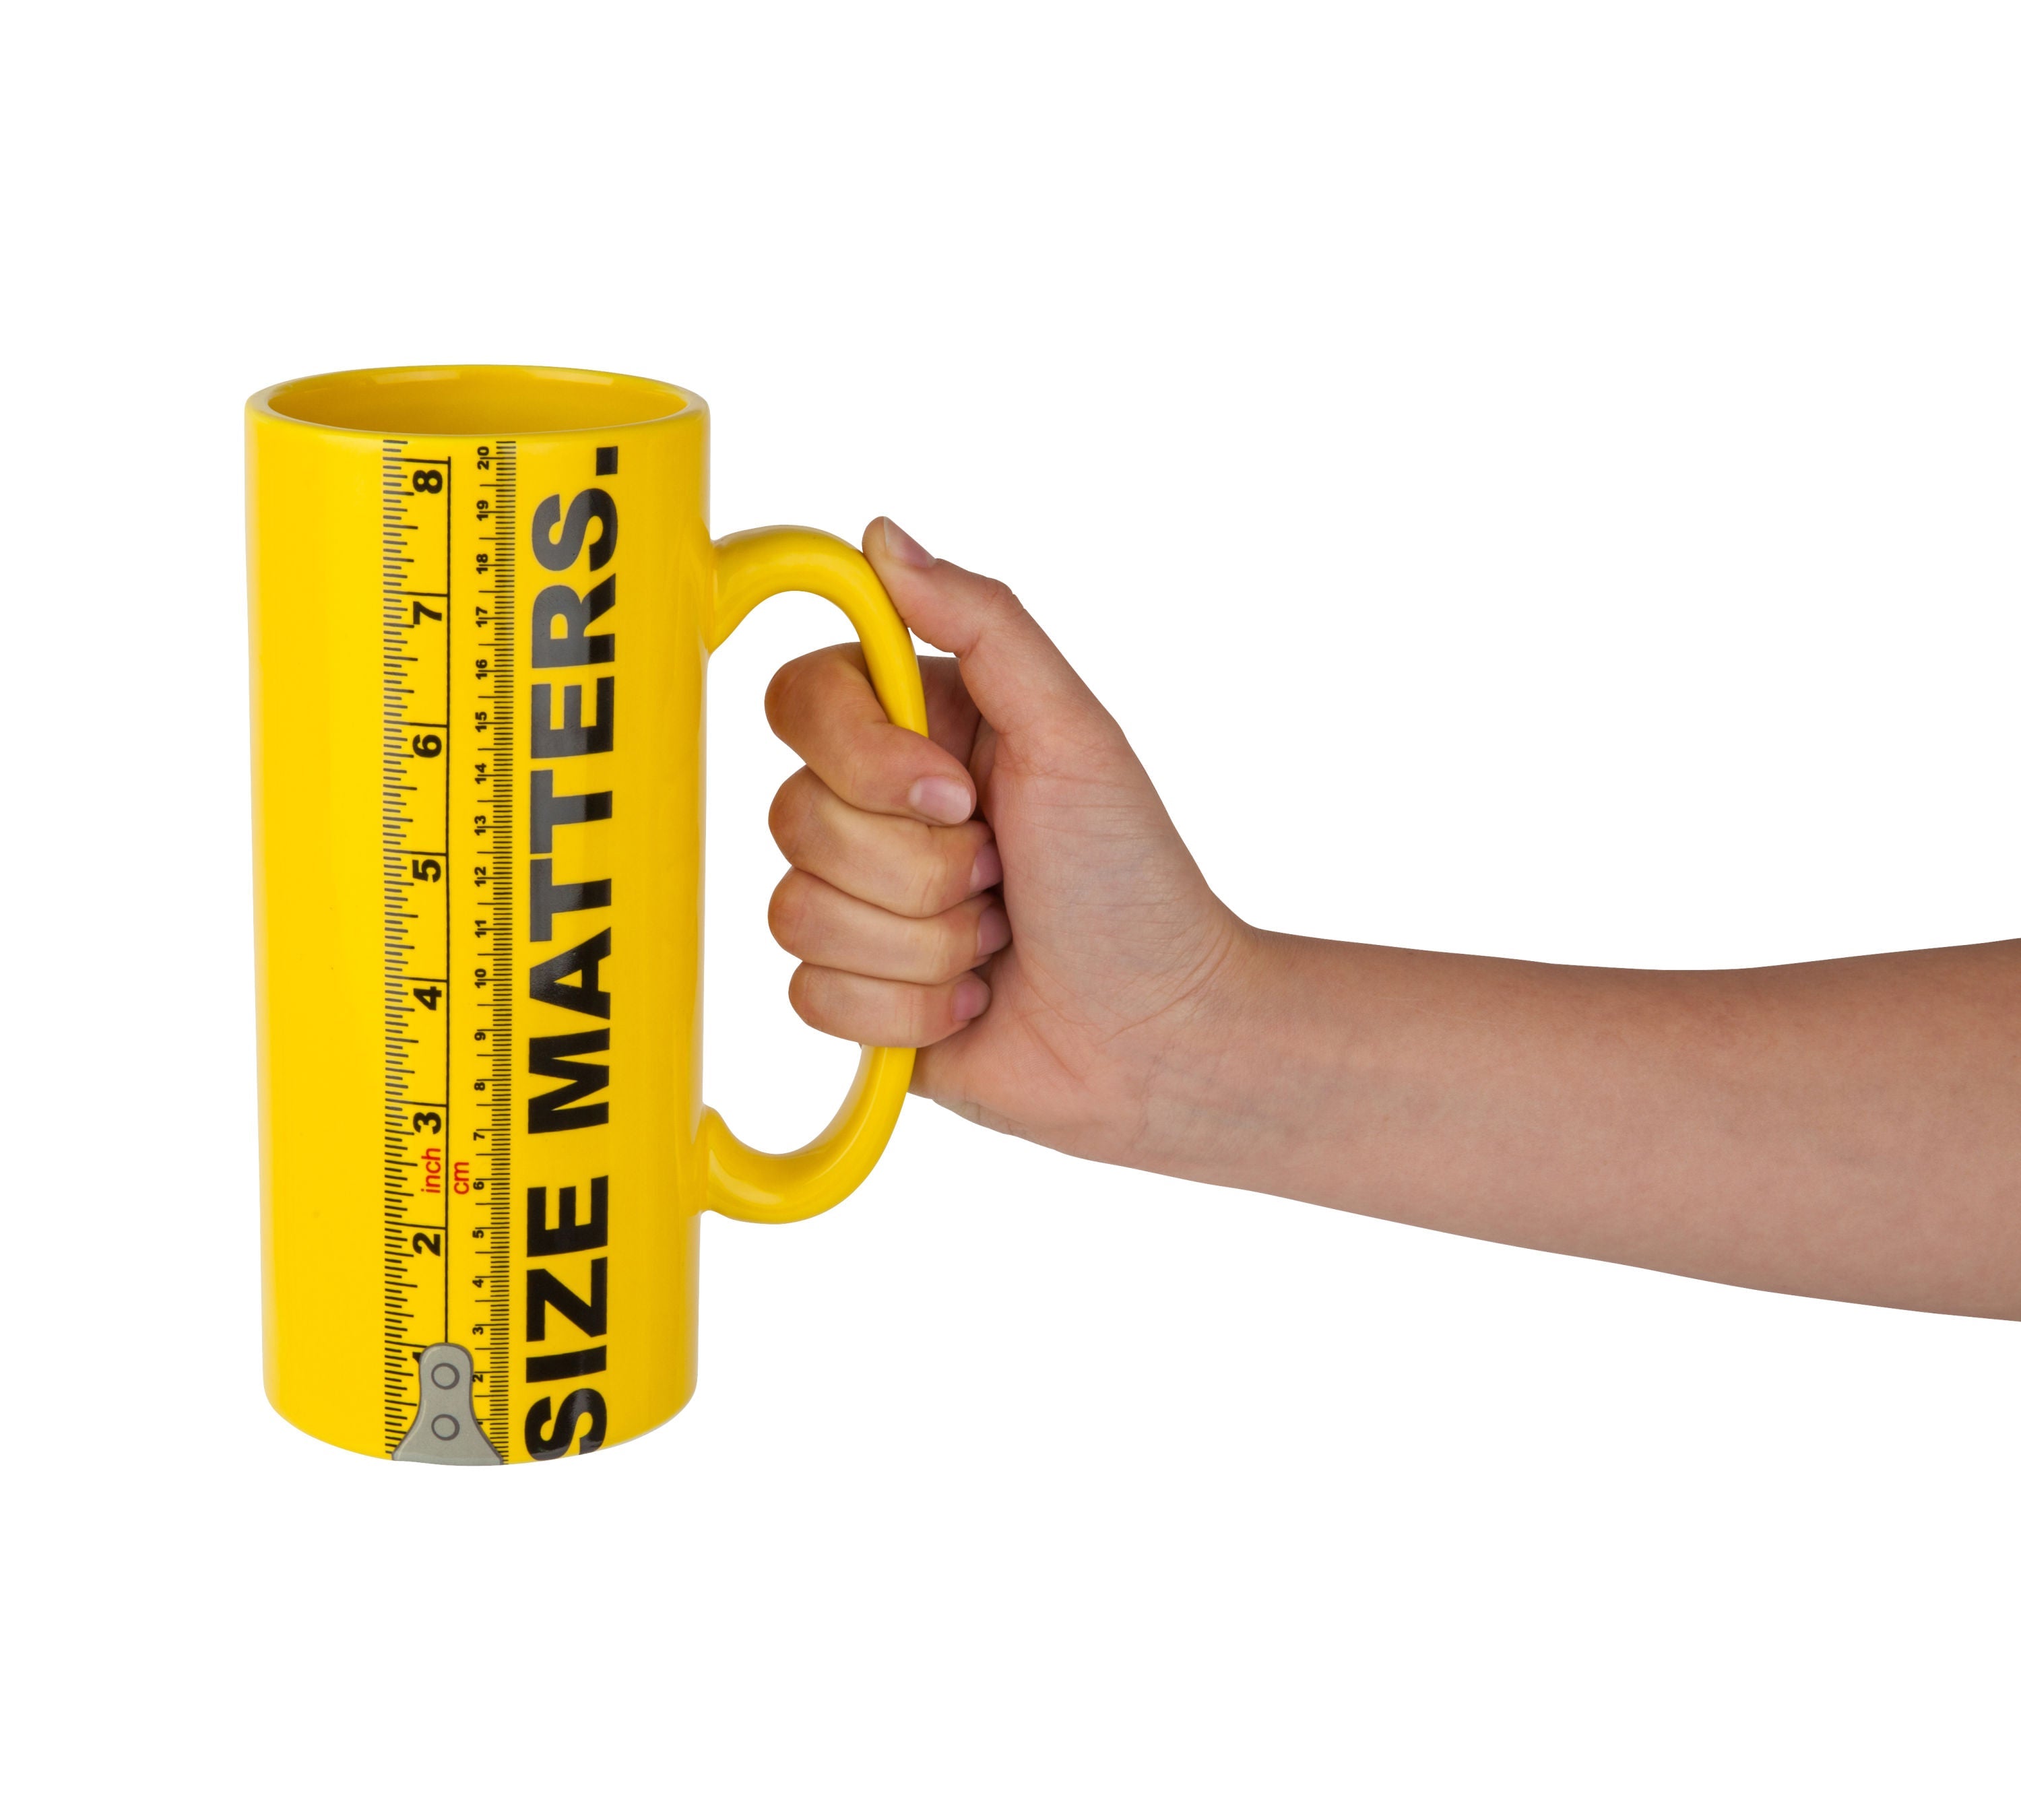 The Size Matters Coffee Mug